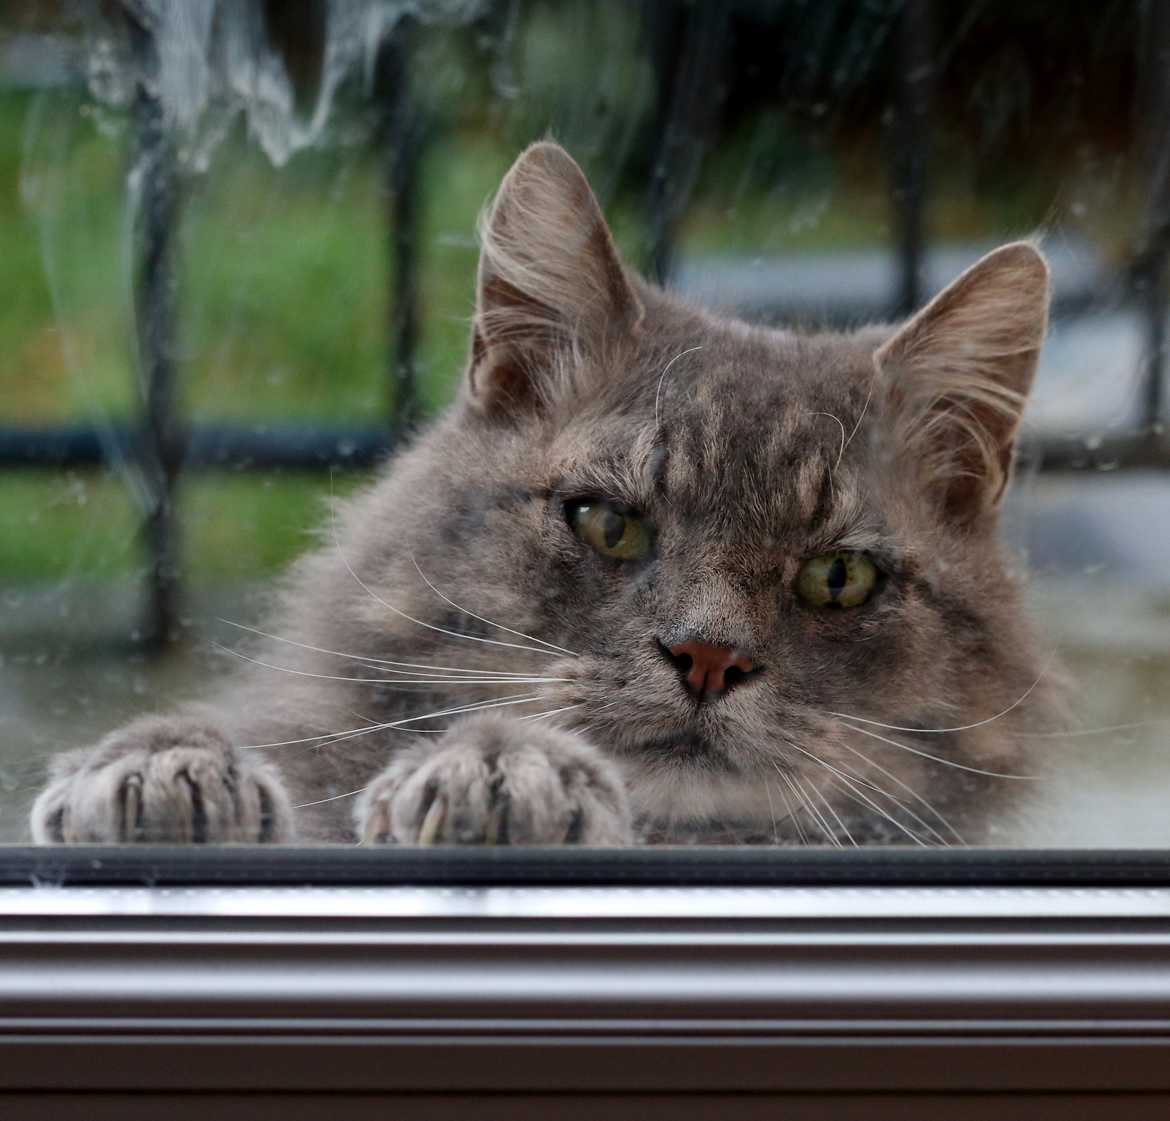 Laissez moi entrer!